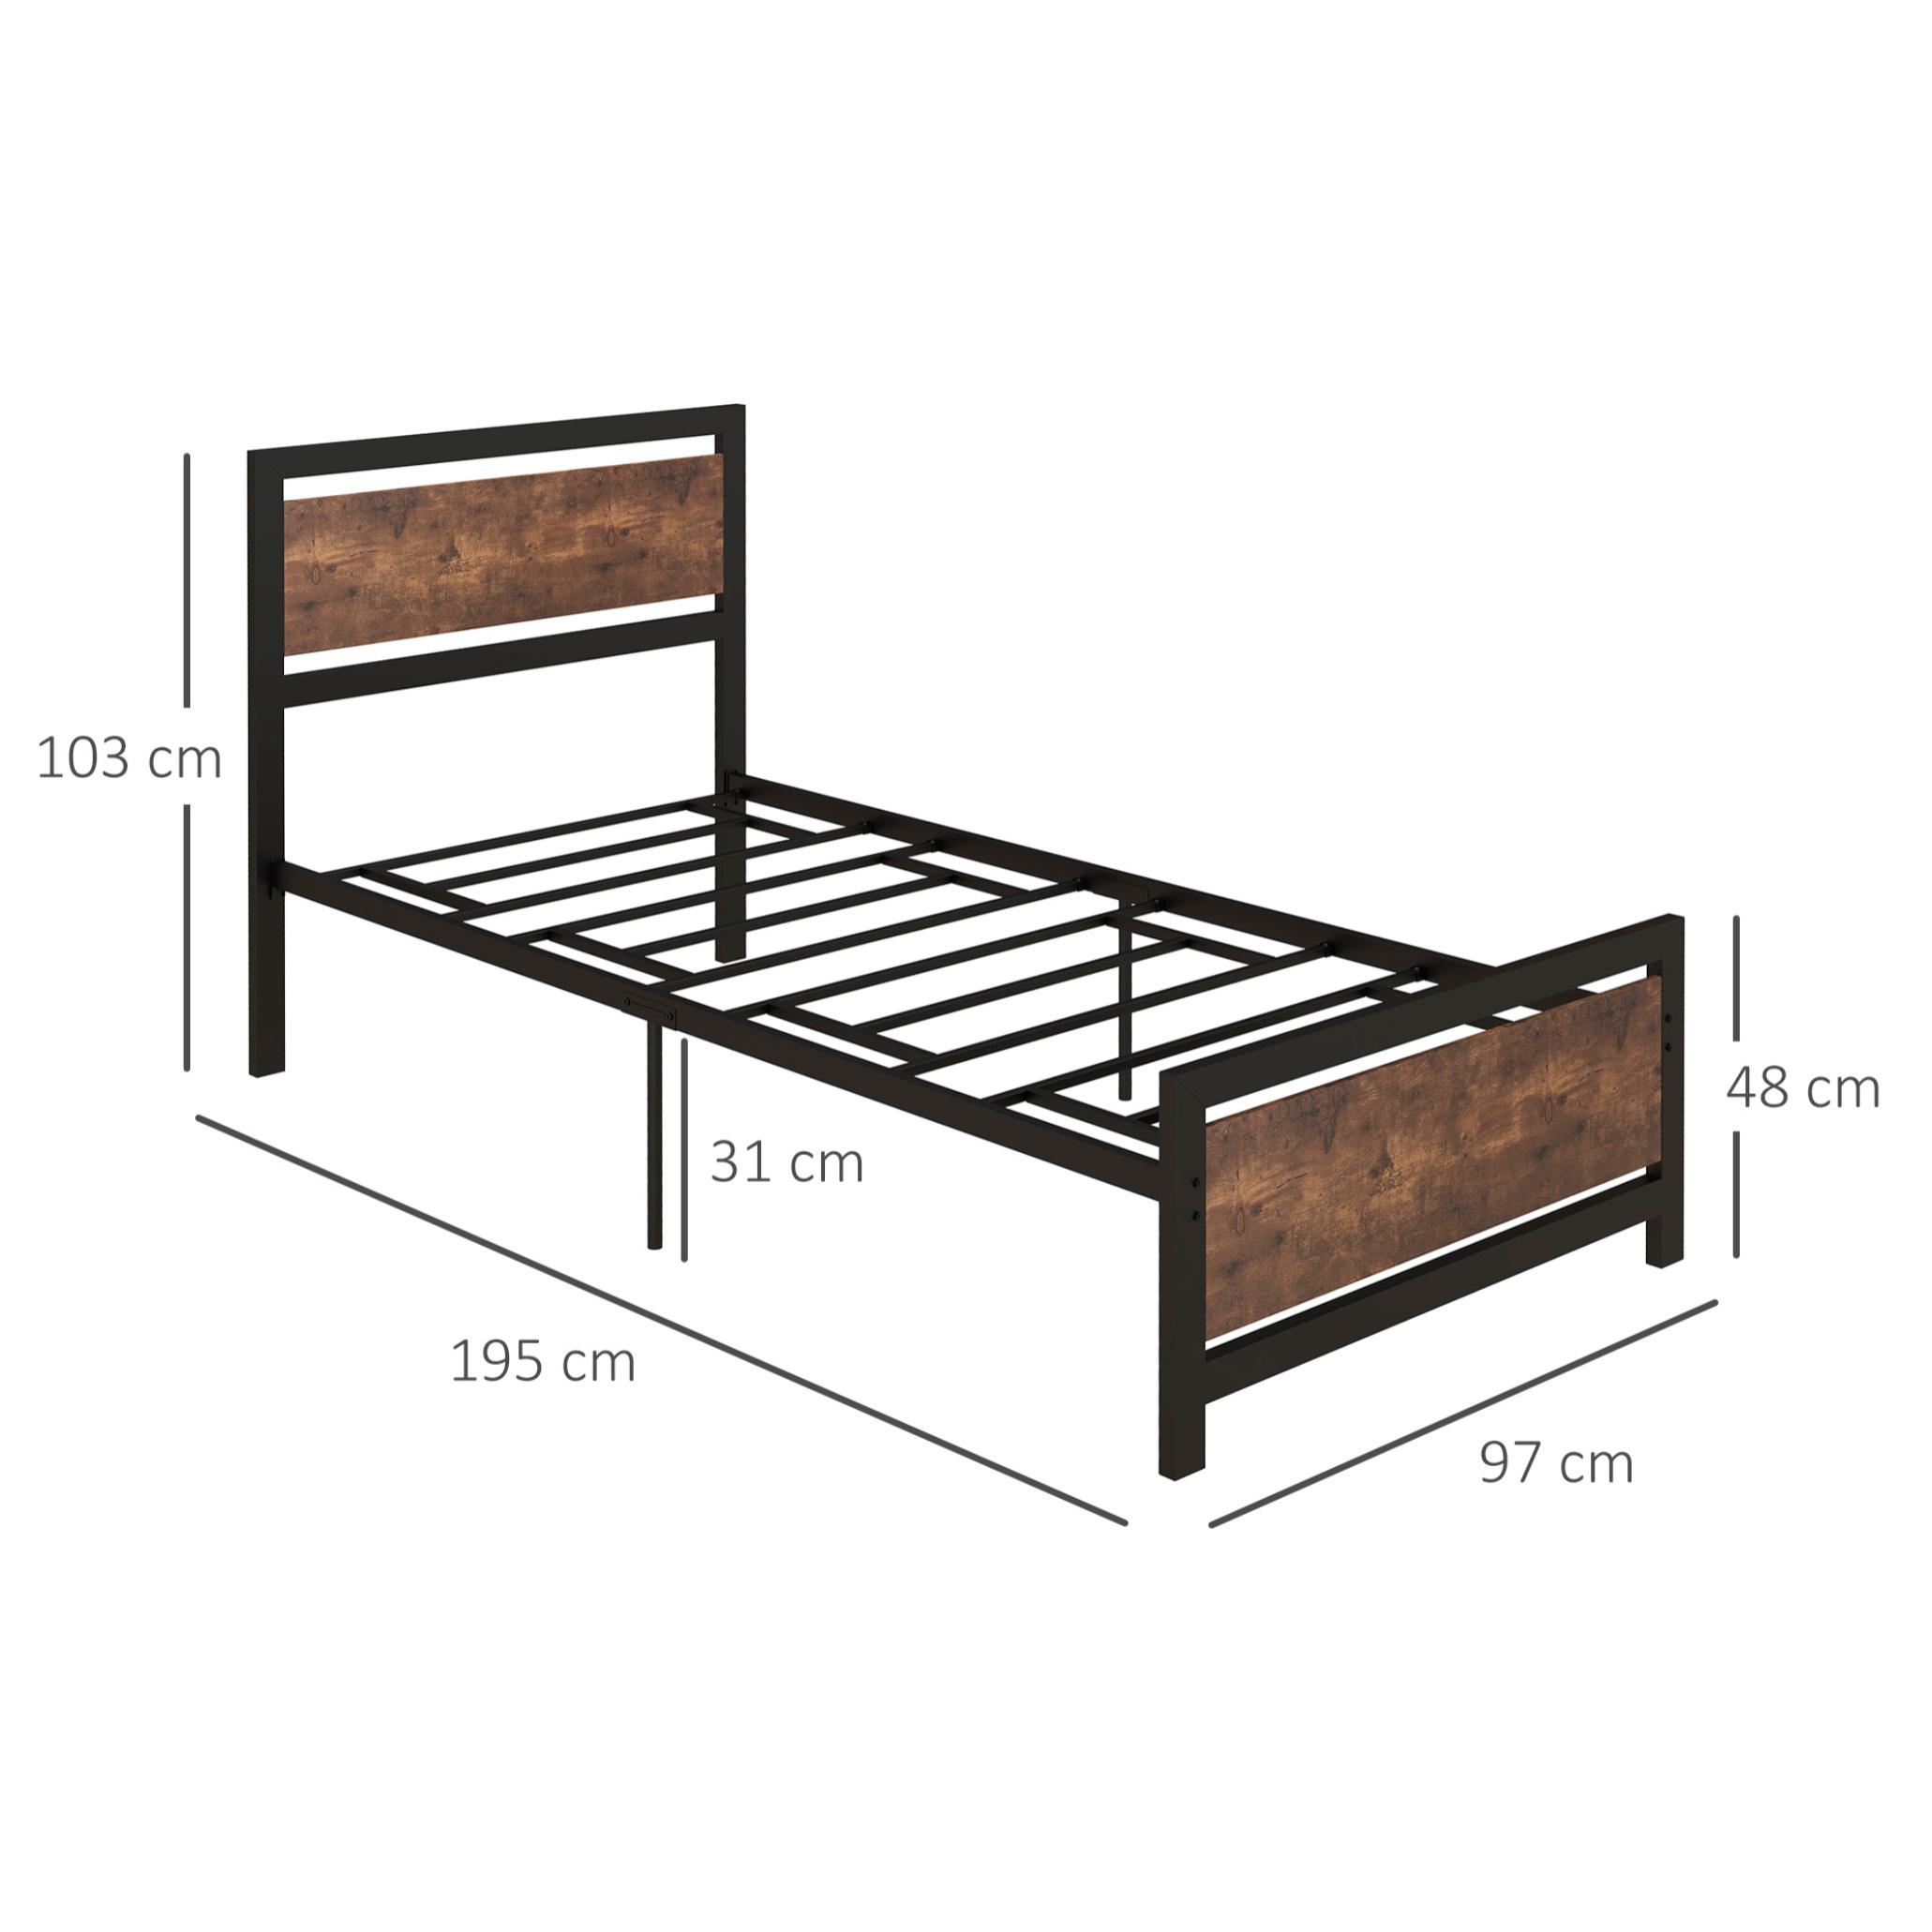 Lit simple design industriel - tête de lit, pied de lit et sommier - dim. 195L x 97l x 103H cm - compatible matelas 190L x 90l cm - acier noir MDF aspect bois avec veinage